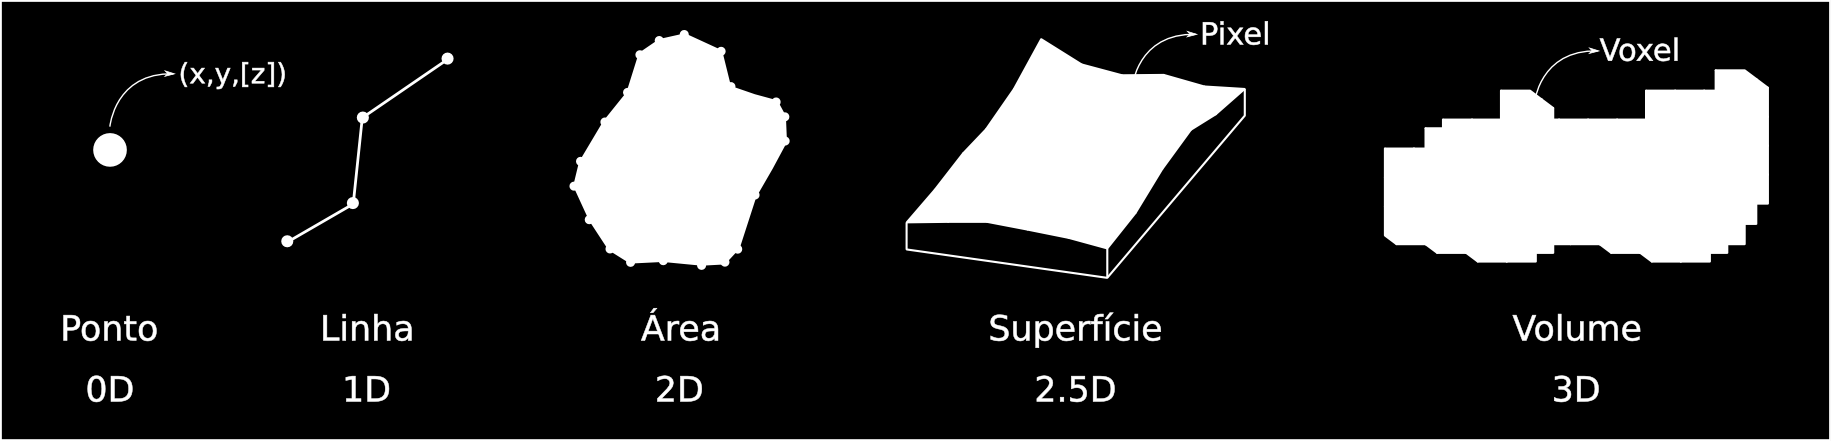 1.4 Estrutura dos comandos no GRASS 5 de SIG nos permitem visualizar as superfícies em perspectivas tri-dimensionais, porém apesar do parâmetro Z ser utilizado para gerar um imagem 3D, a superfície